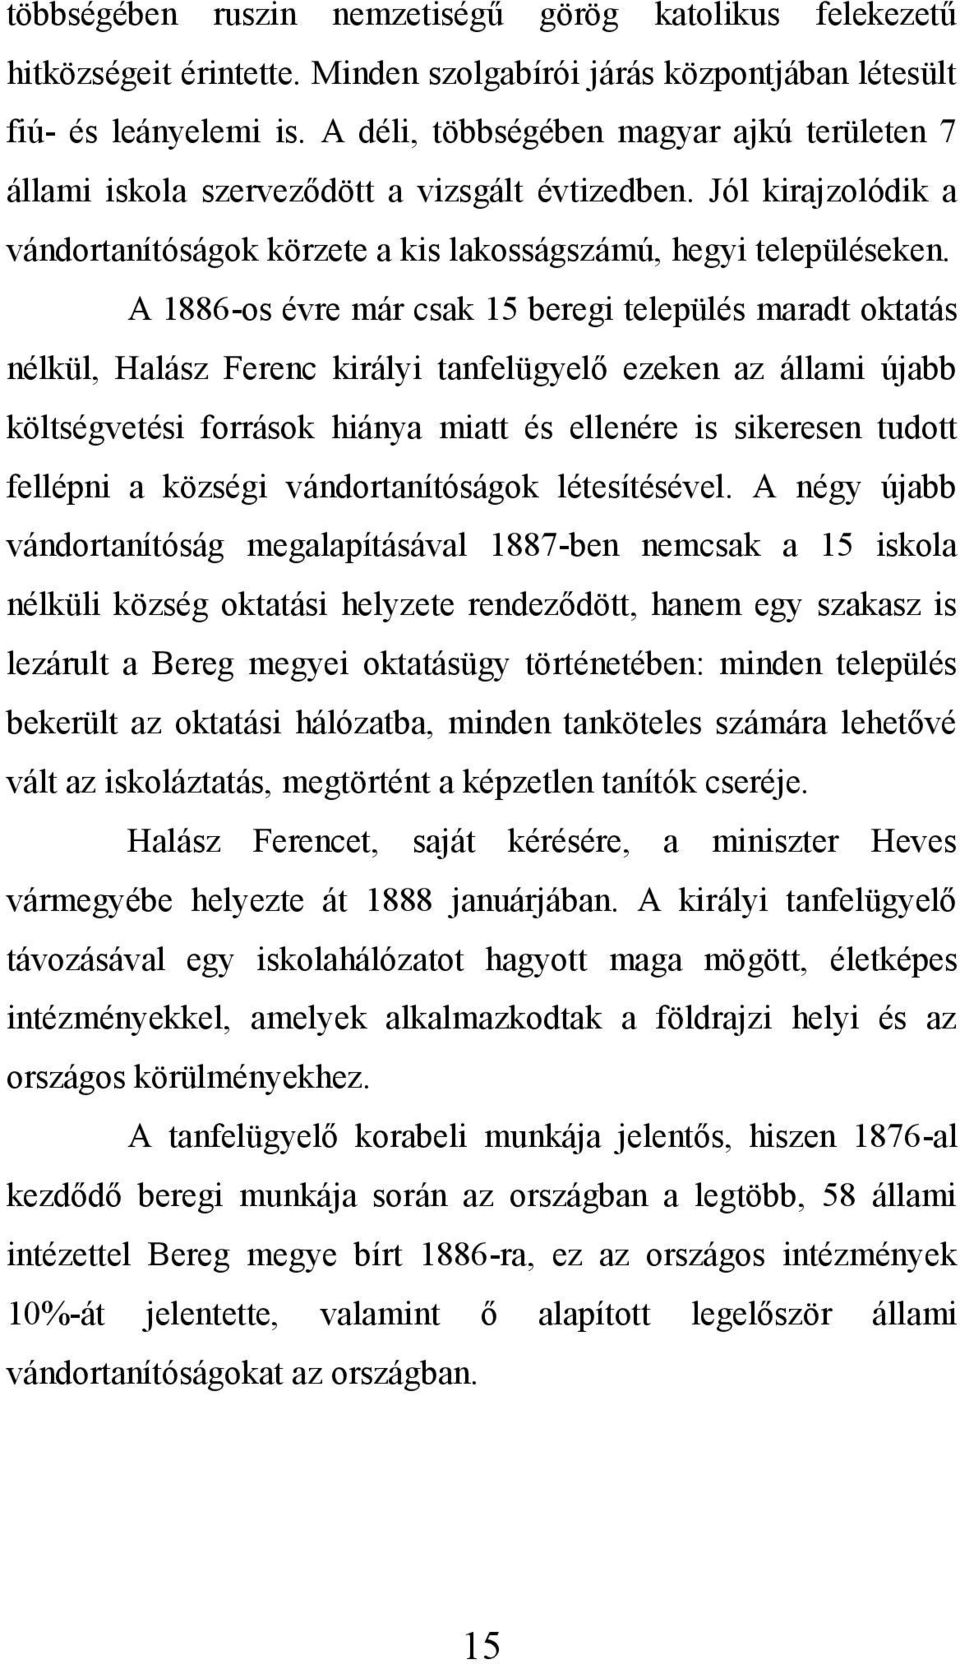 A 1886-os évre már csak 15 beregi település maradt oktatás nélkül, Halász Ferenc királyi tanfelügyelő ezeken az állami újabb költségvetési források hiánya miatt és ellenére is sikeresen tudott